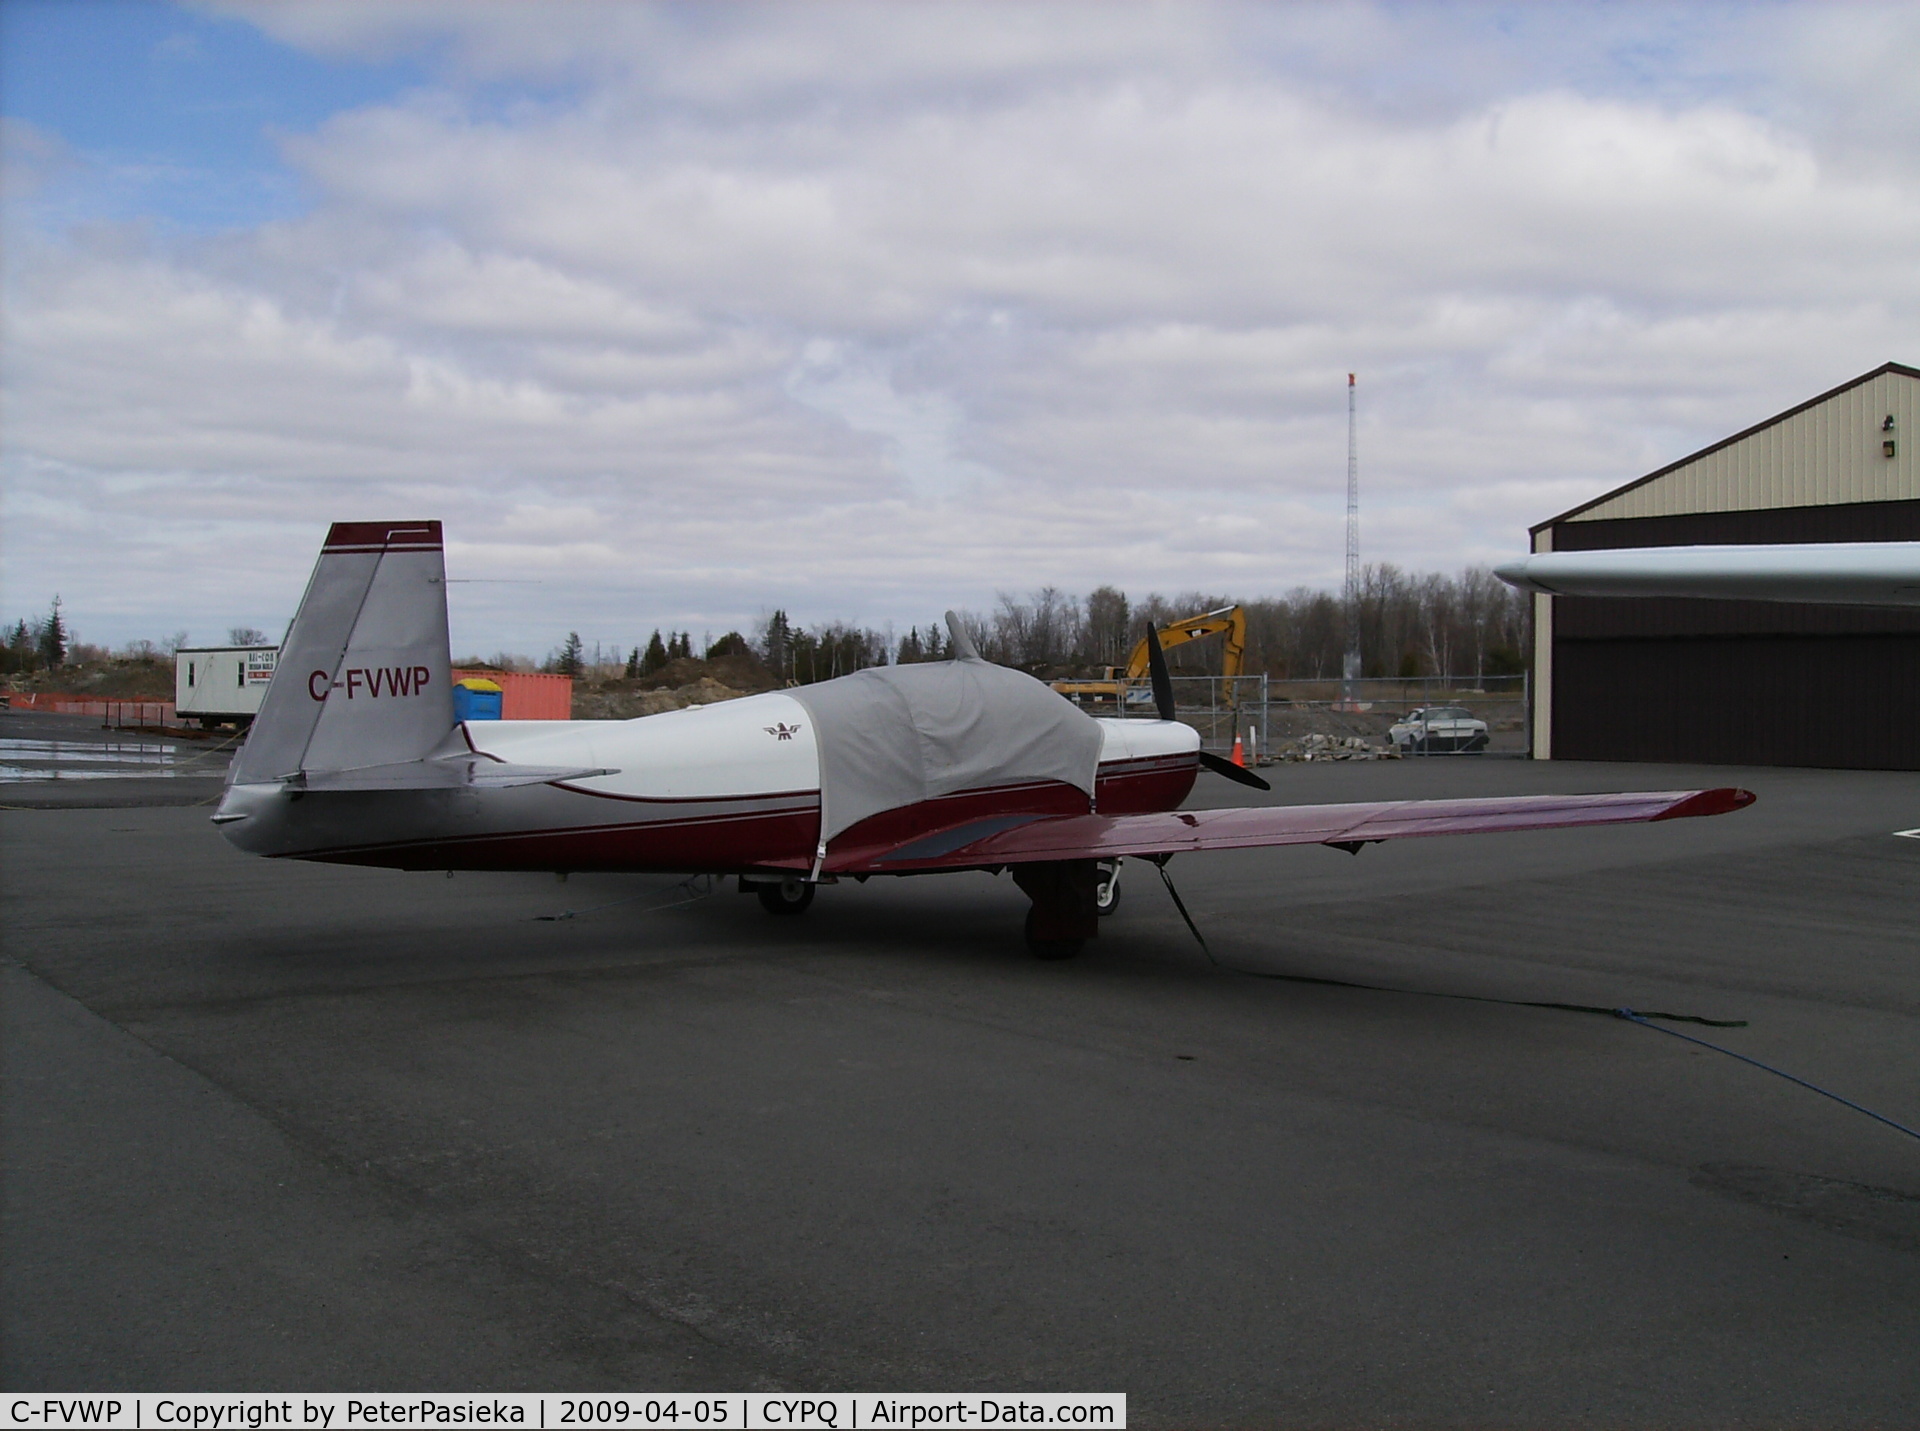 C-FVWP, Mooney M20E Super 21 C/N 670062, @ Peterborough Airport, Ontario Canada